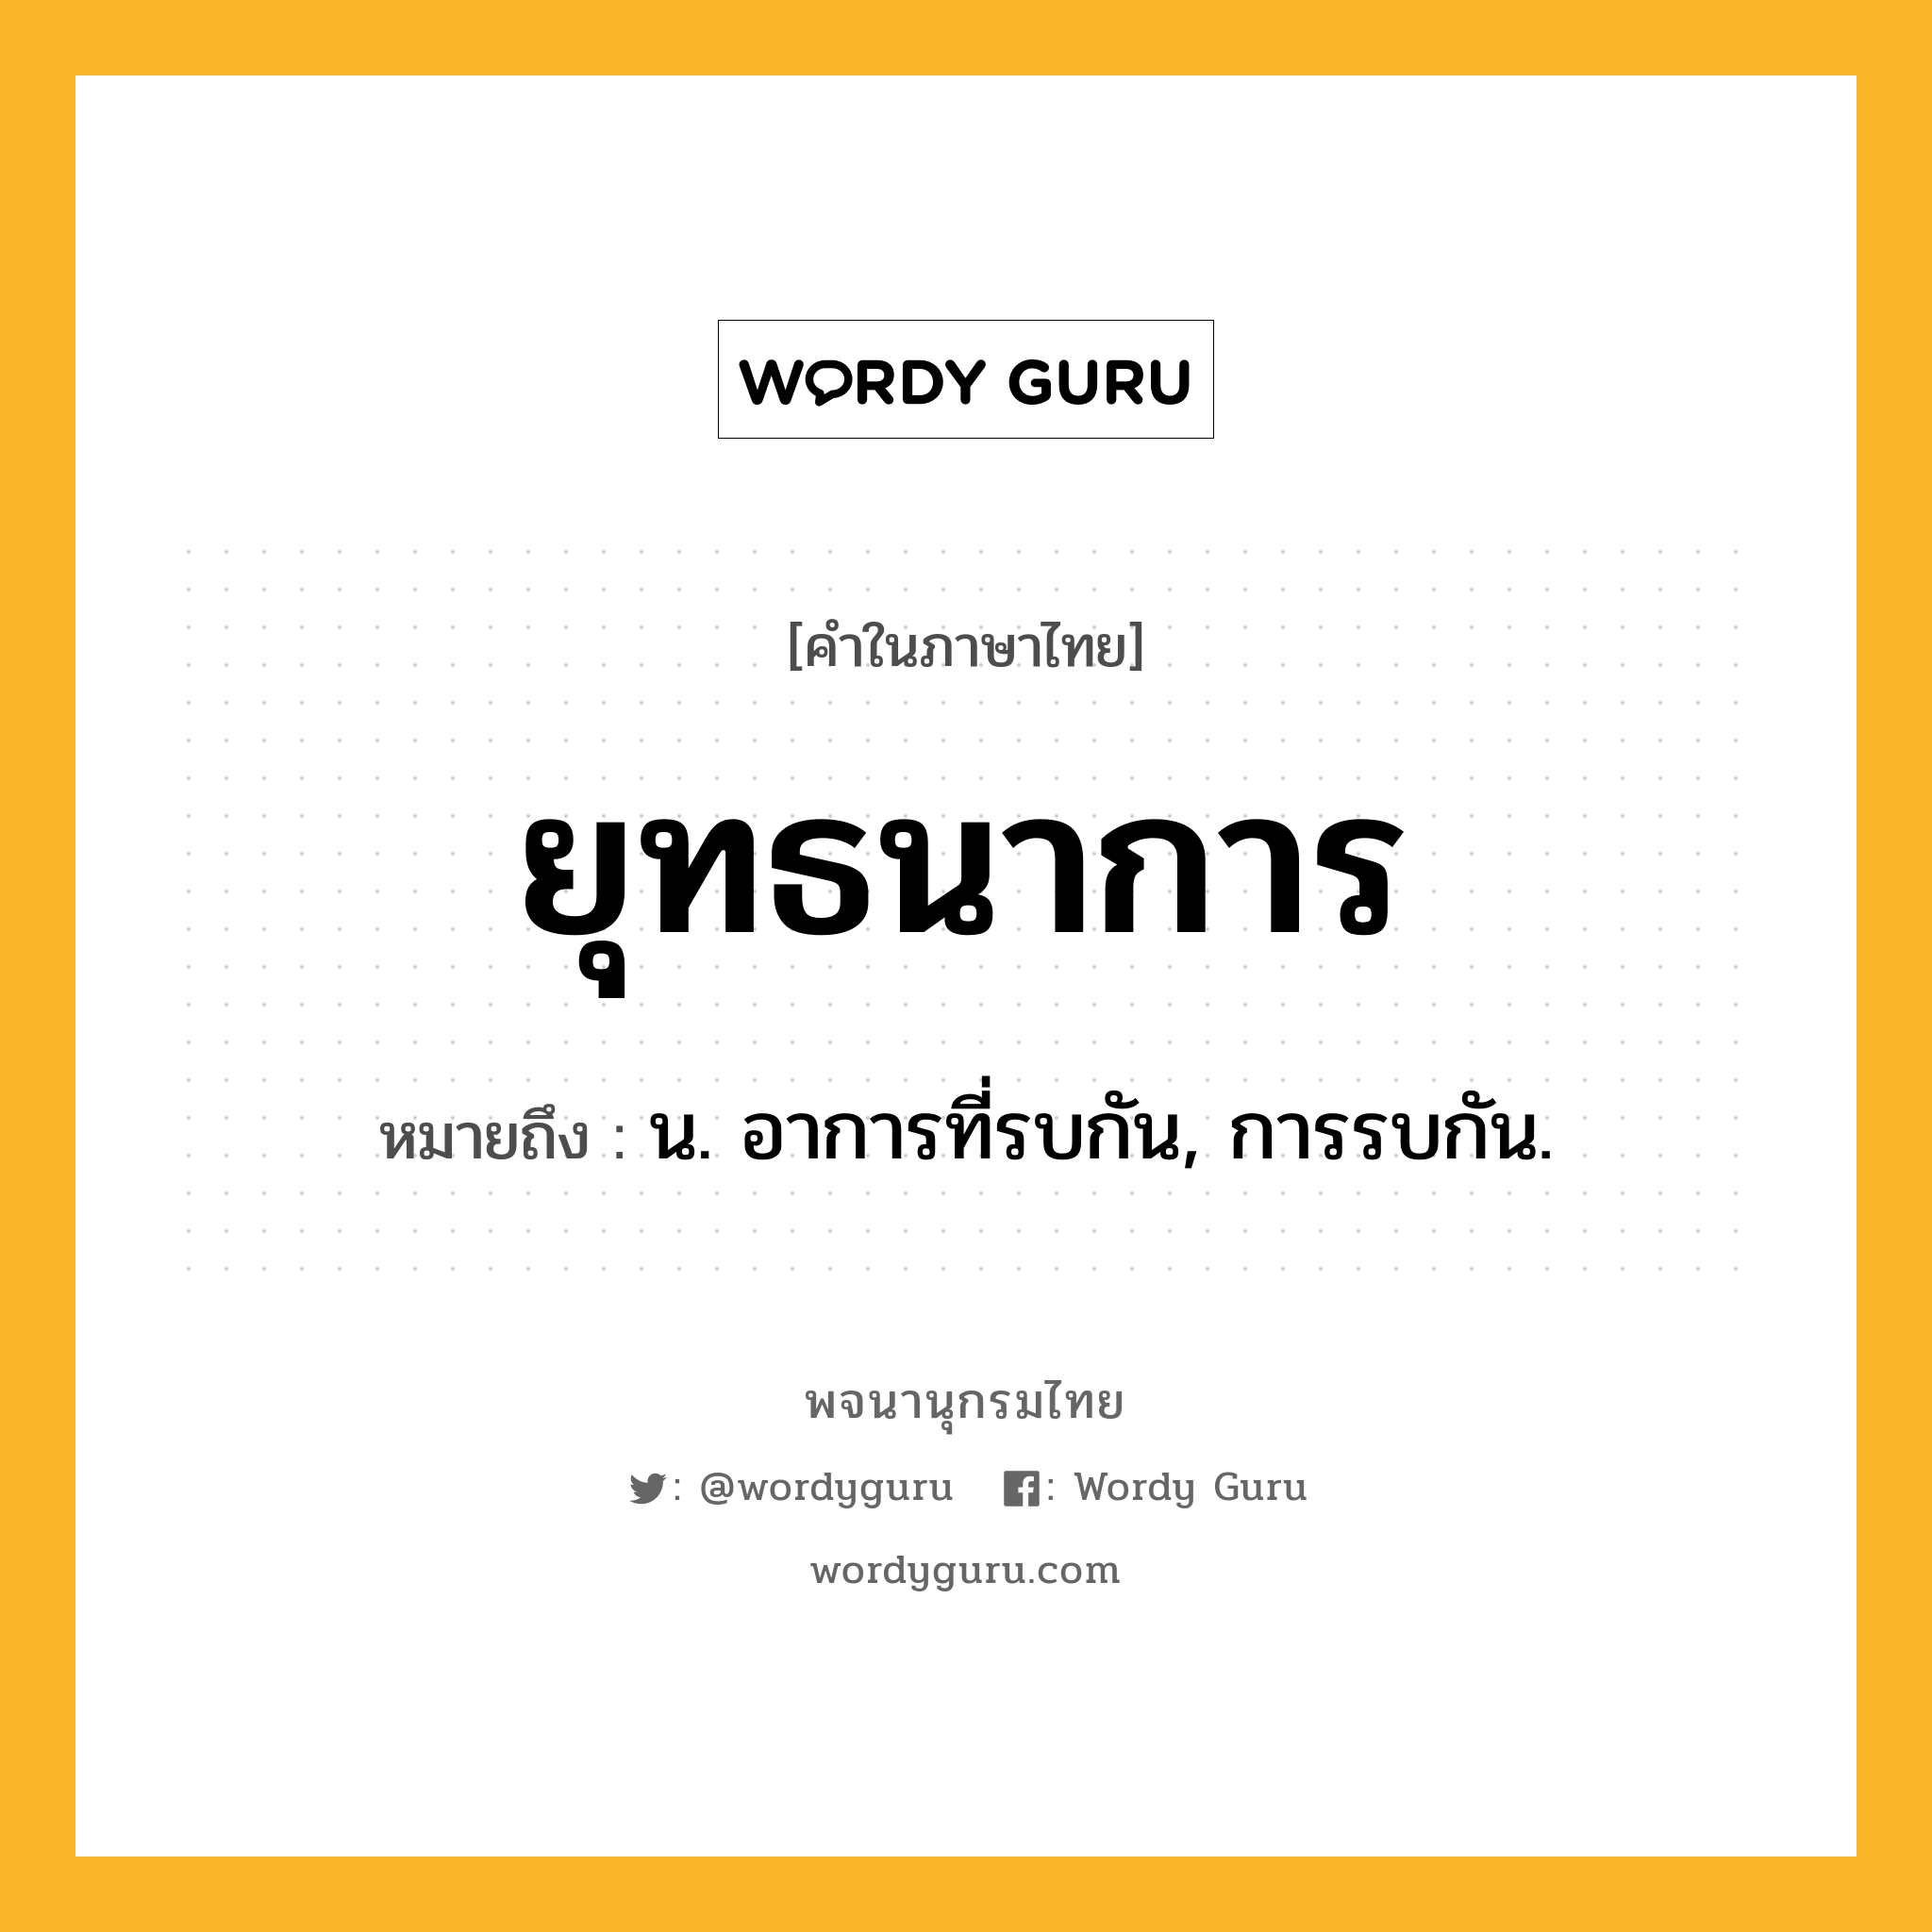 ยุทธนาการ ความหมาย หมายถึงอะไร?, คำในภาษาไทย ยุทธนาการ หมายถึง น. อาการที่รบกัน, การรบกัน.